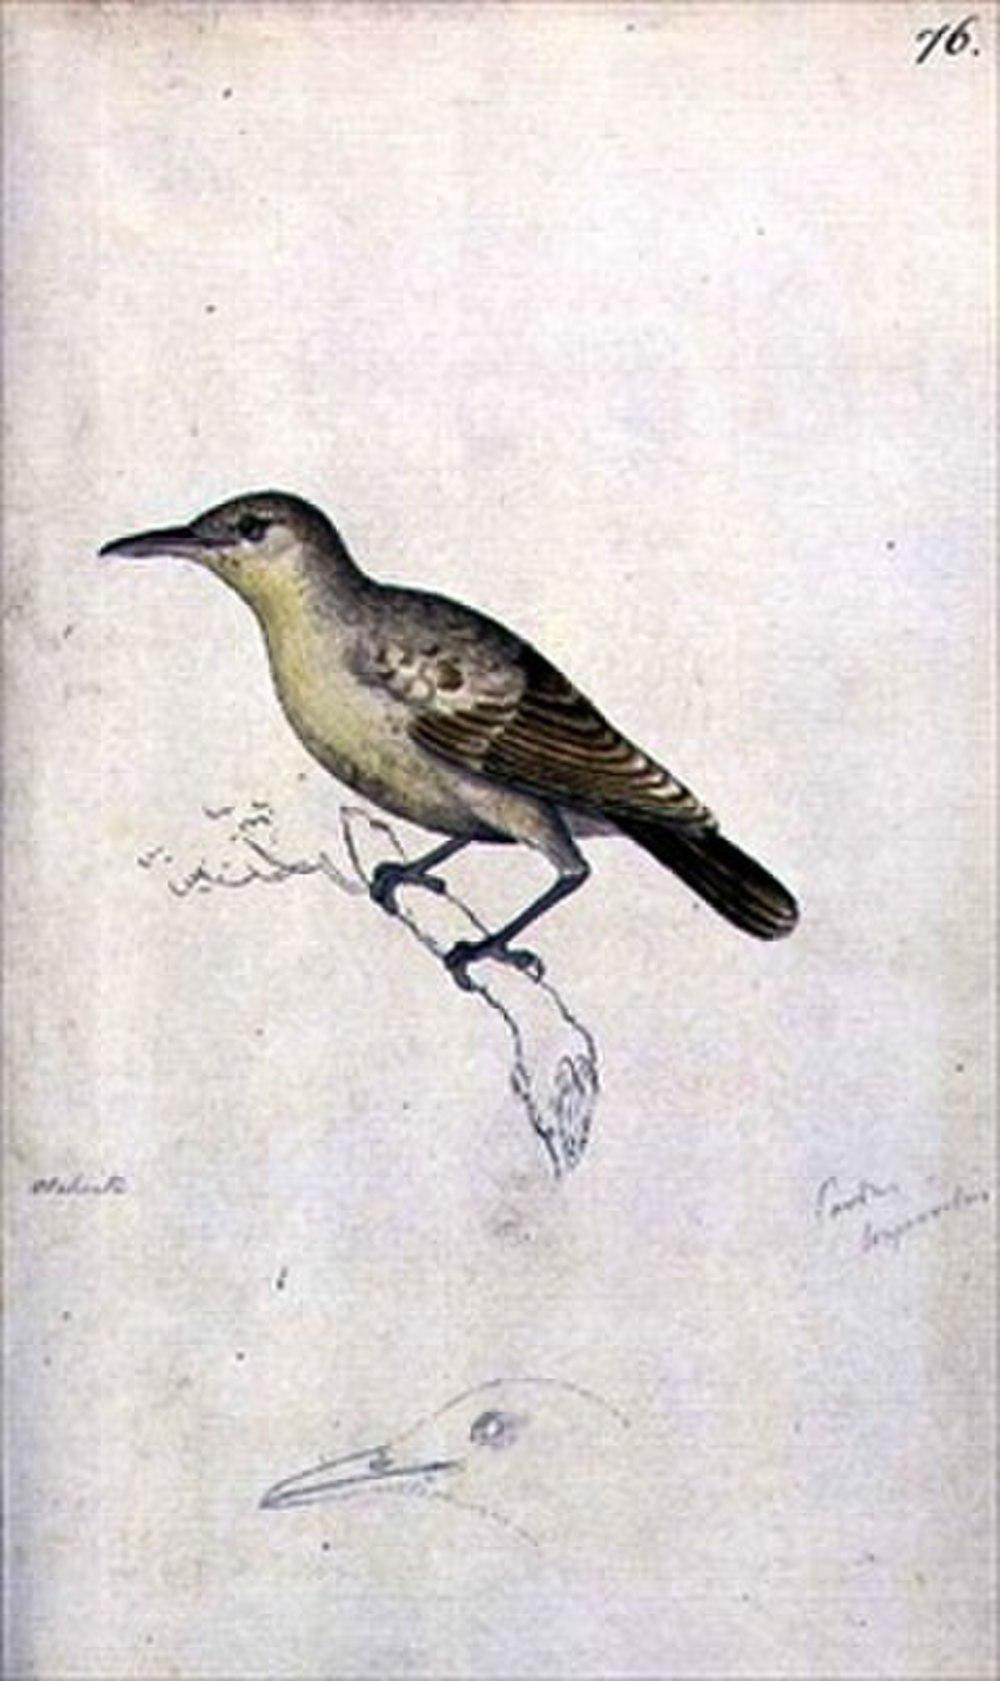 莫岛苇莺 / Moorea Reed Warbler / Acrocephalus longirostris